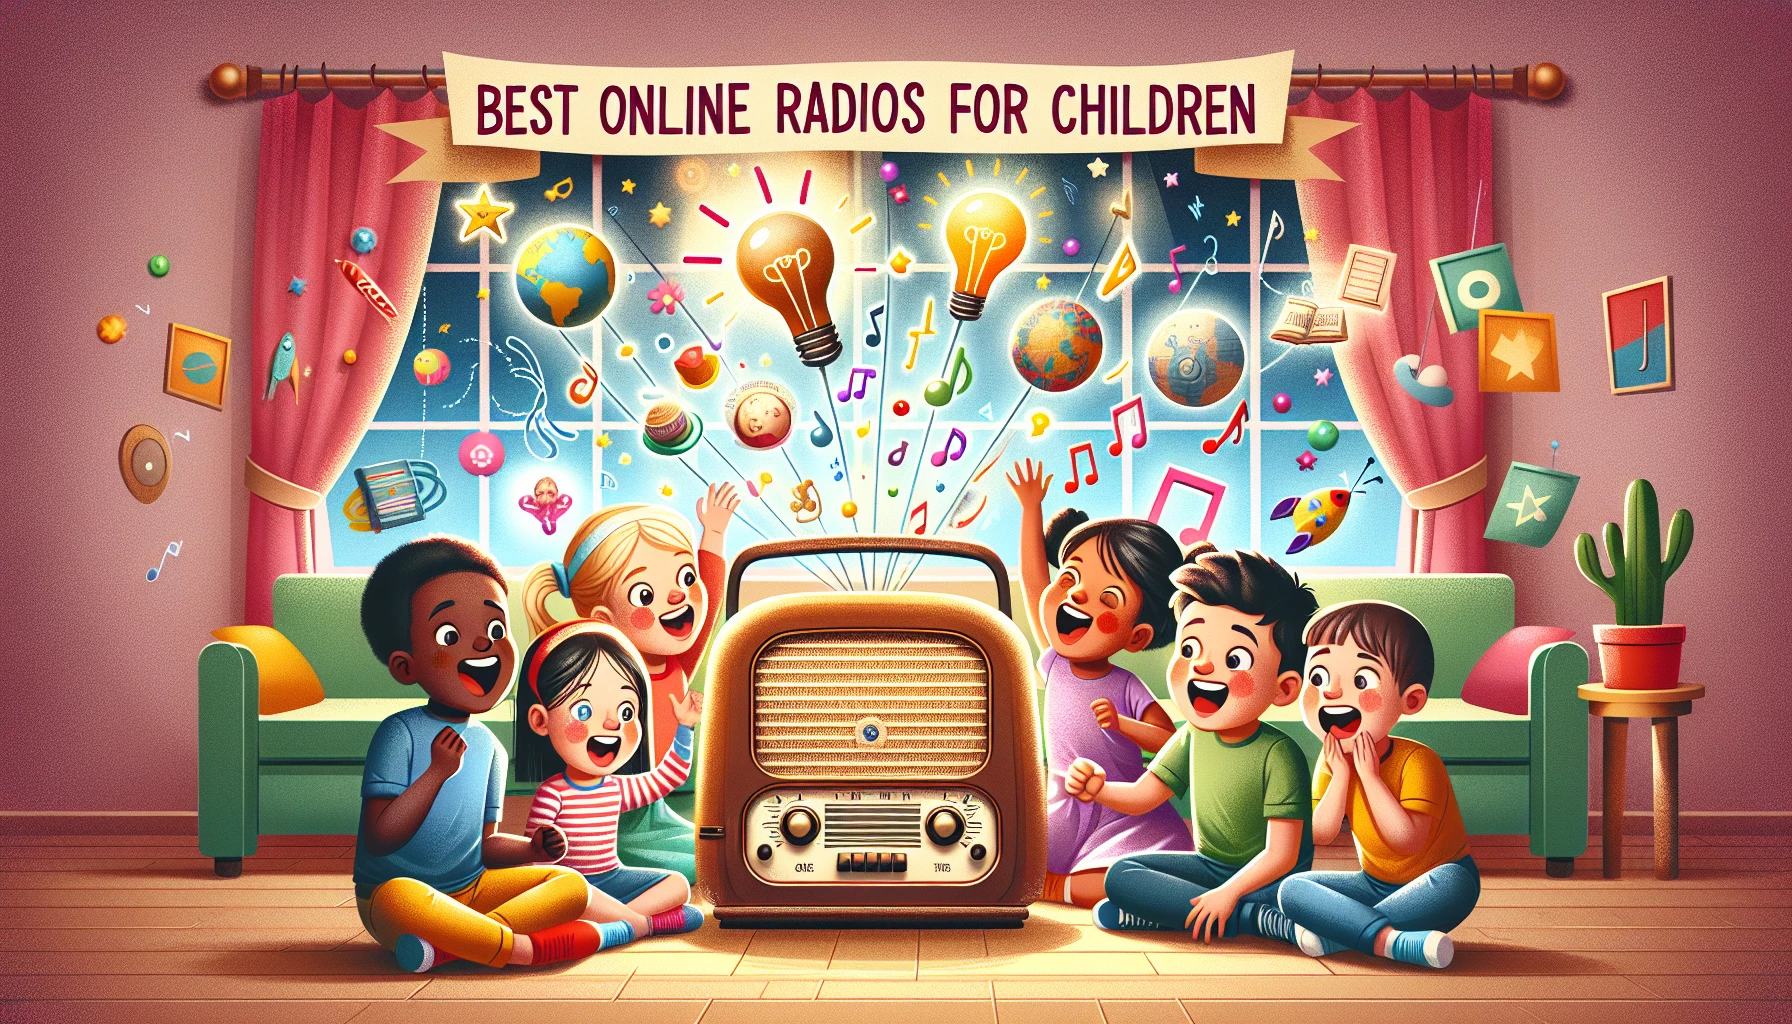 Les meilleures radios en ligne pour enfants